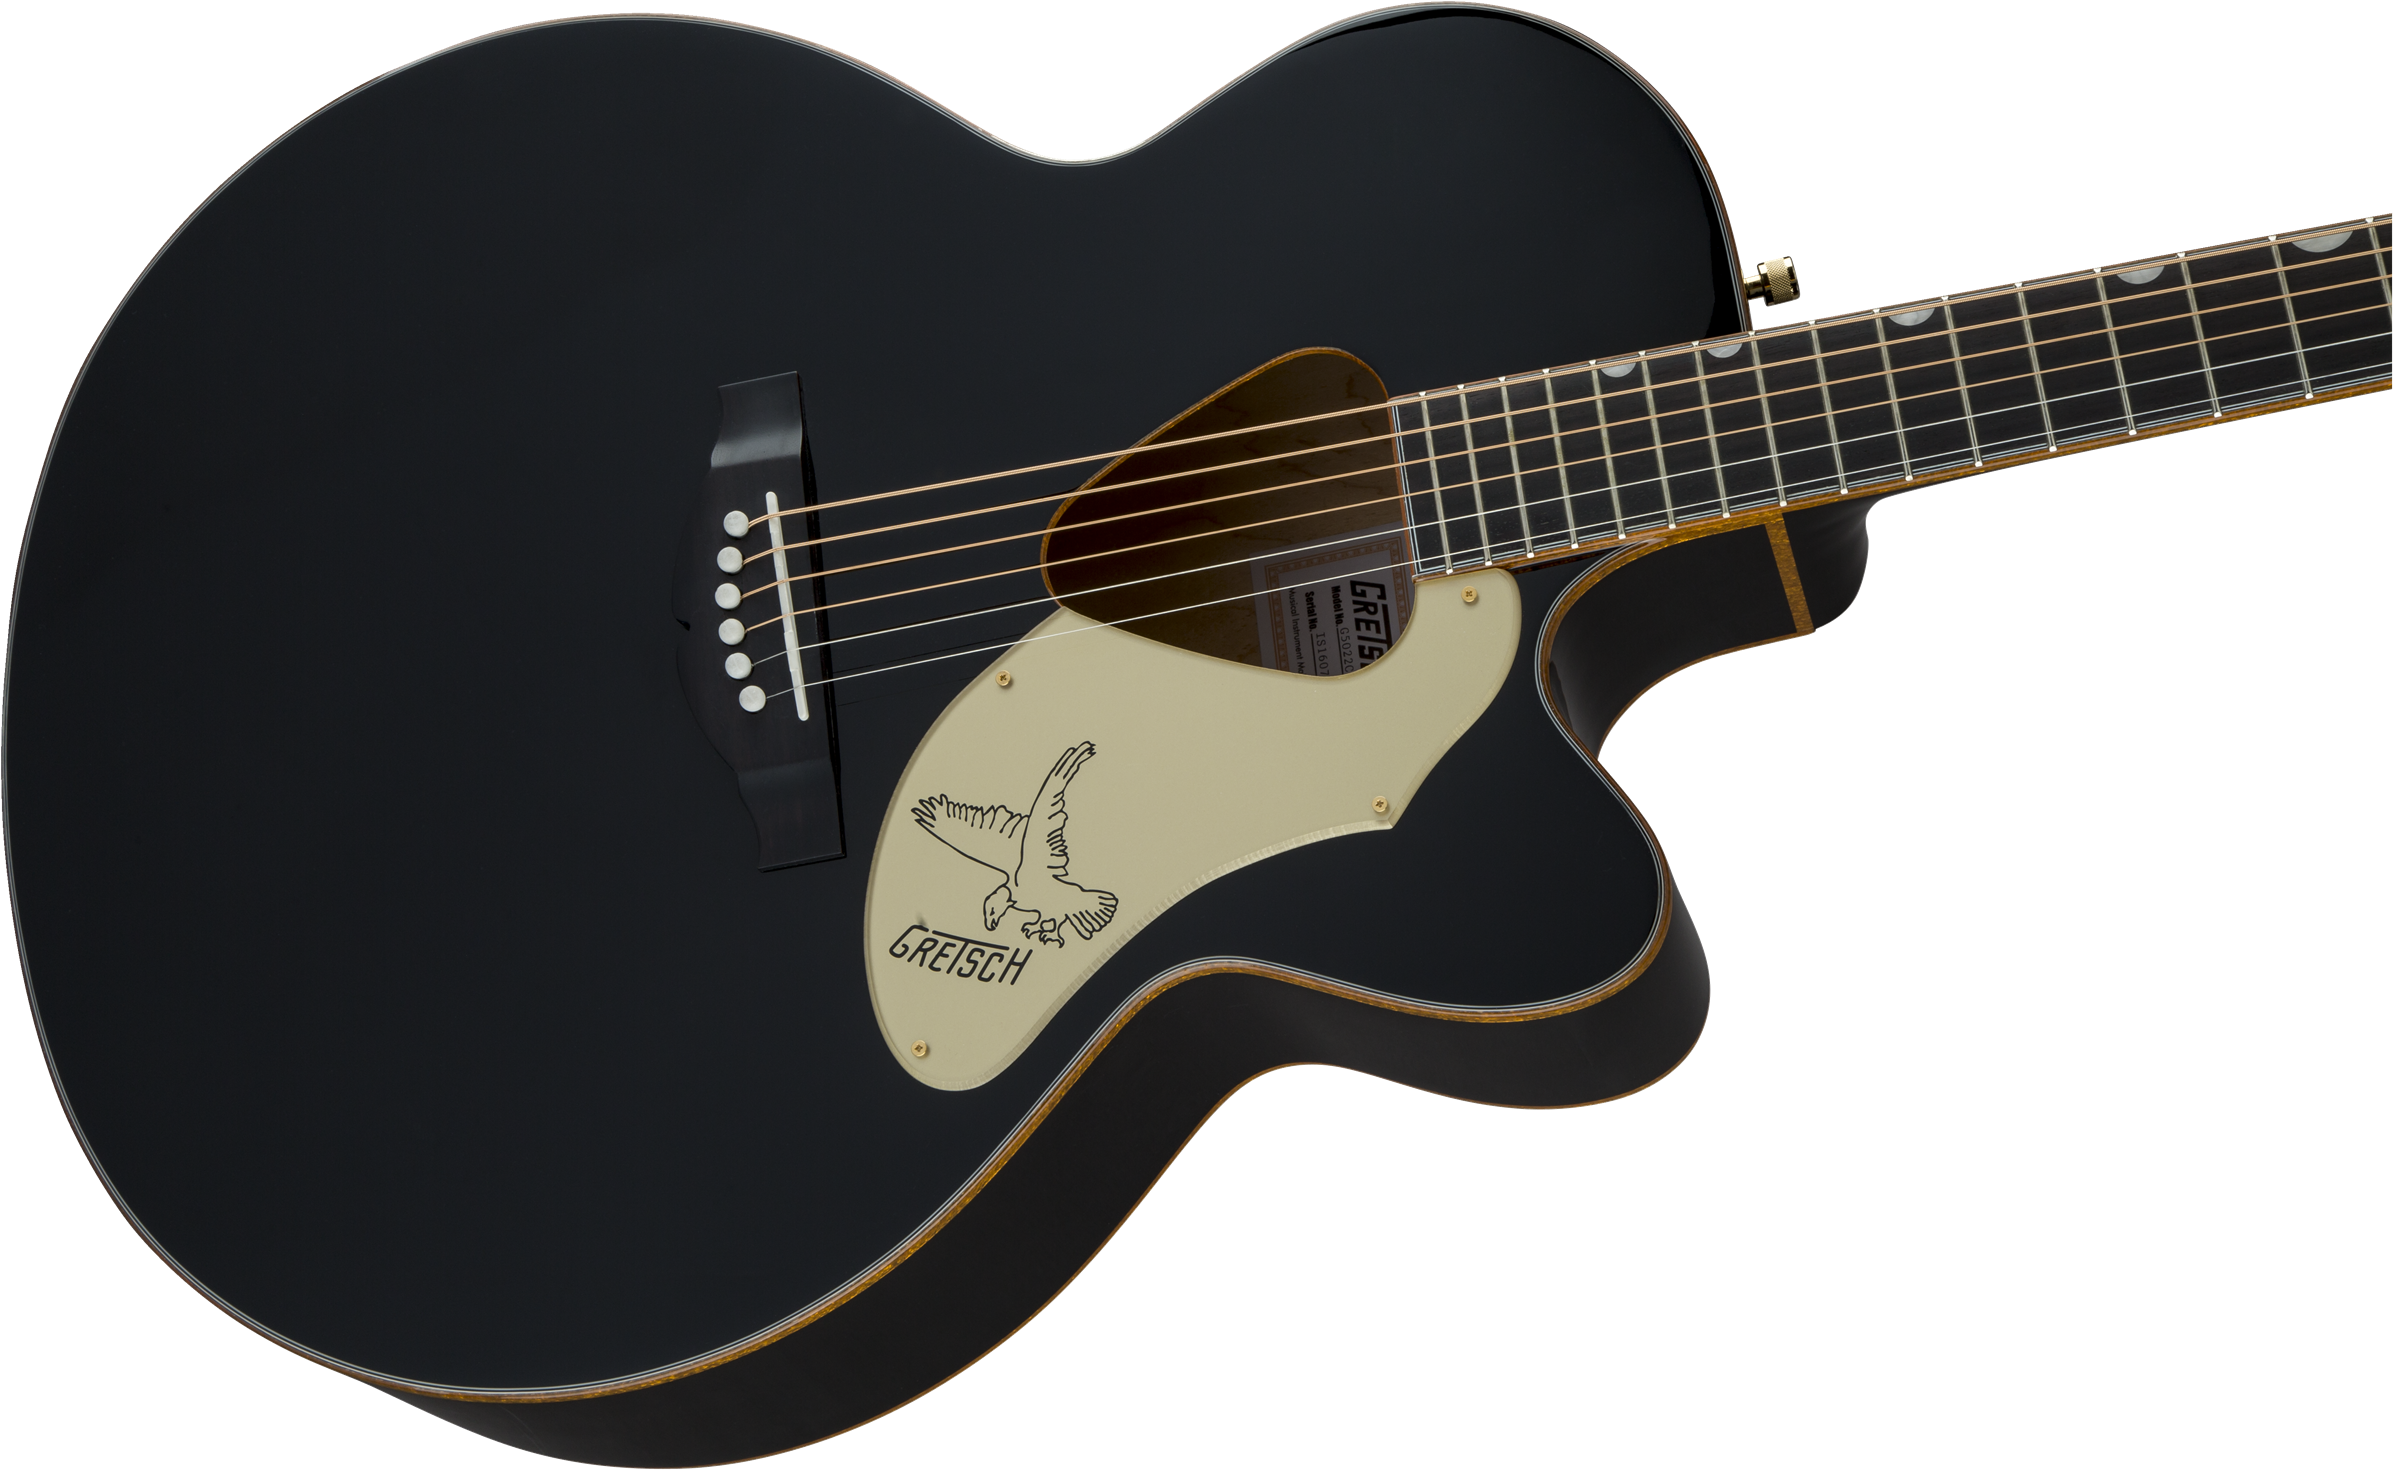 Gretsch G5022cbfe Rancher Falcon Jumbo Cw Epicea Erable Rw - Black - Electro acoustic guitar - Variation 3